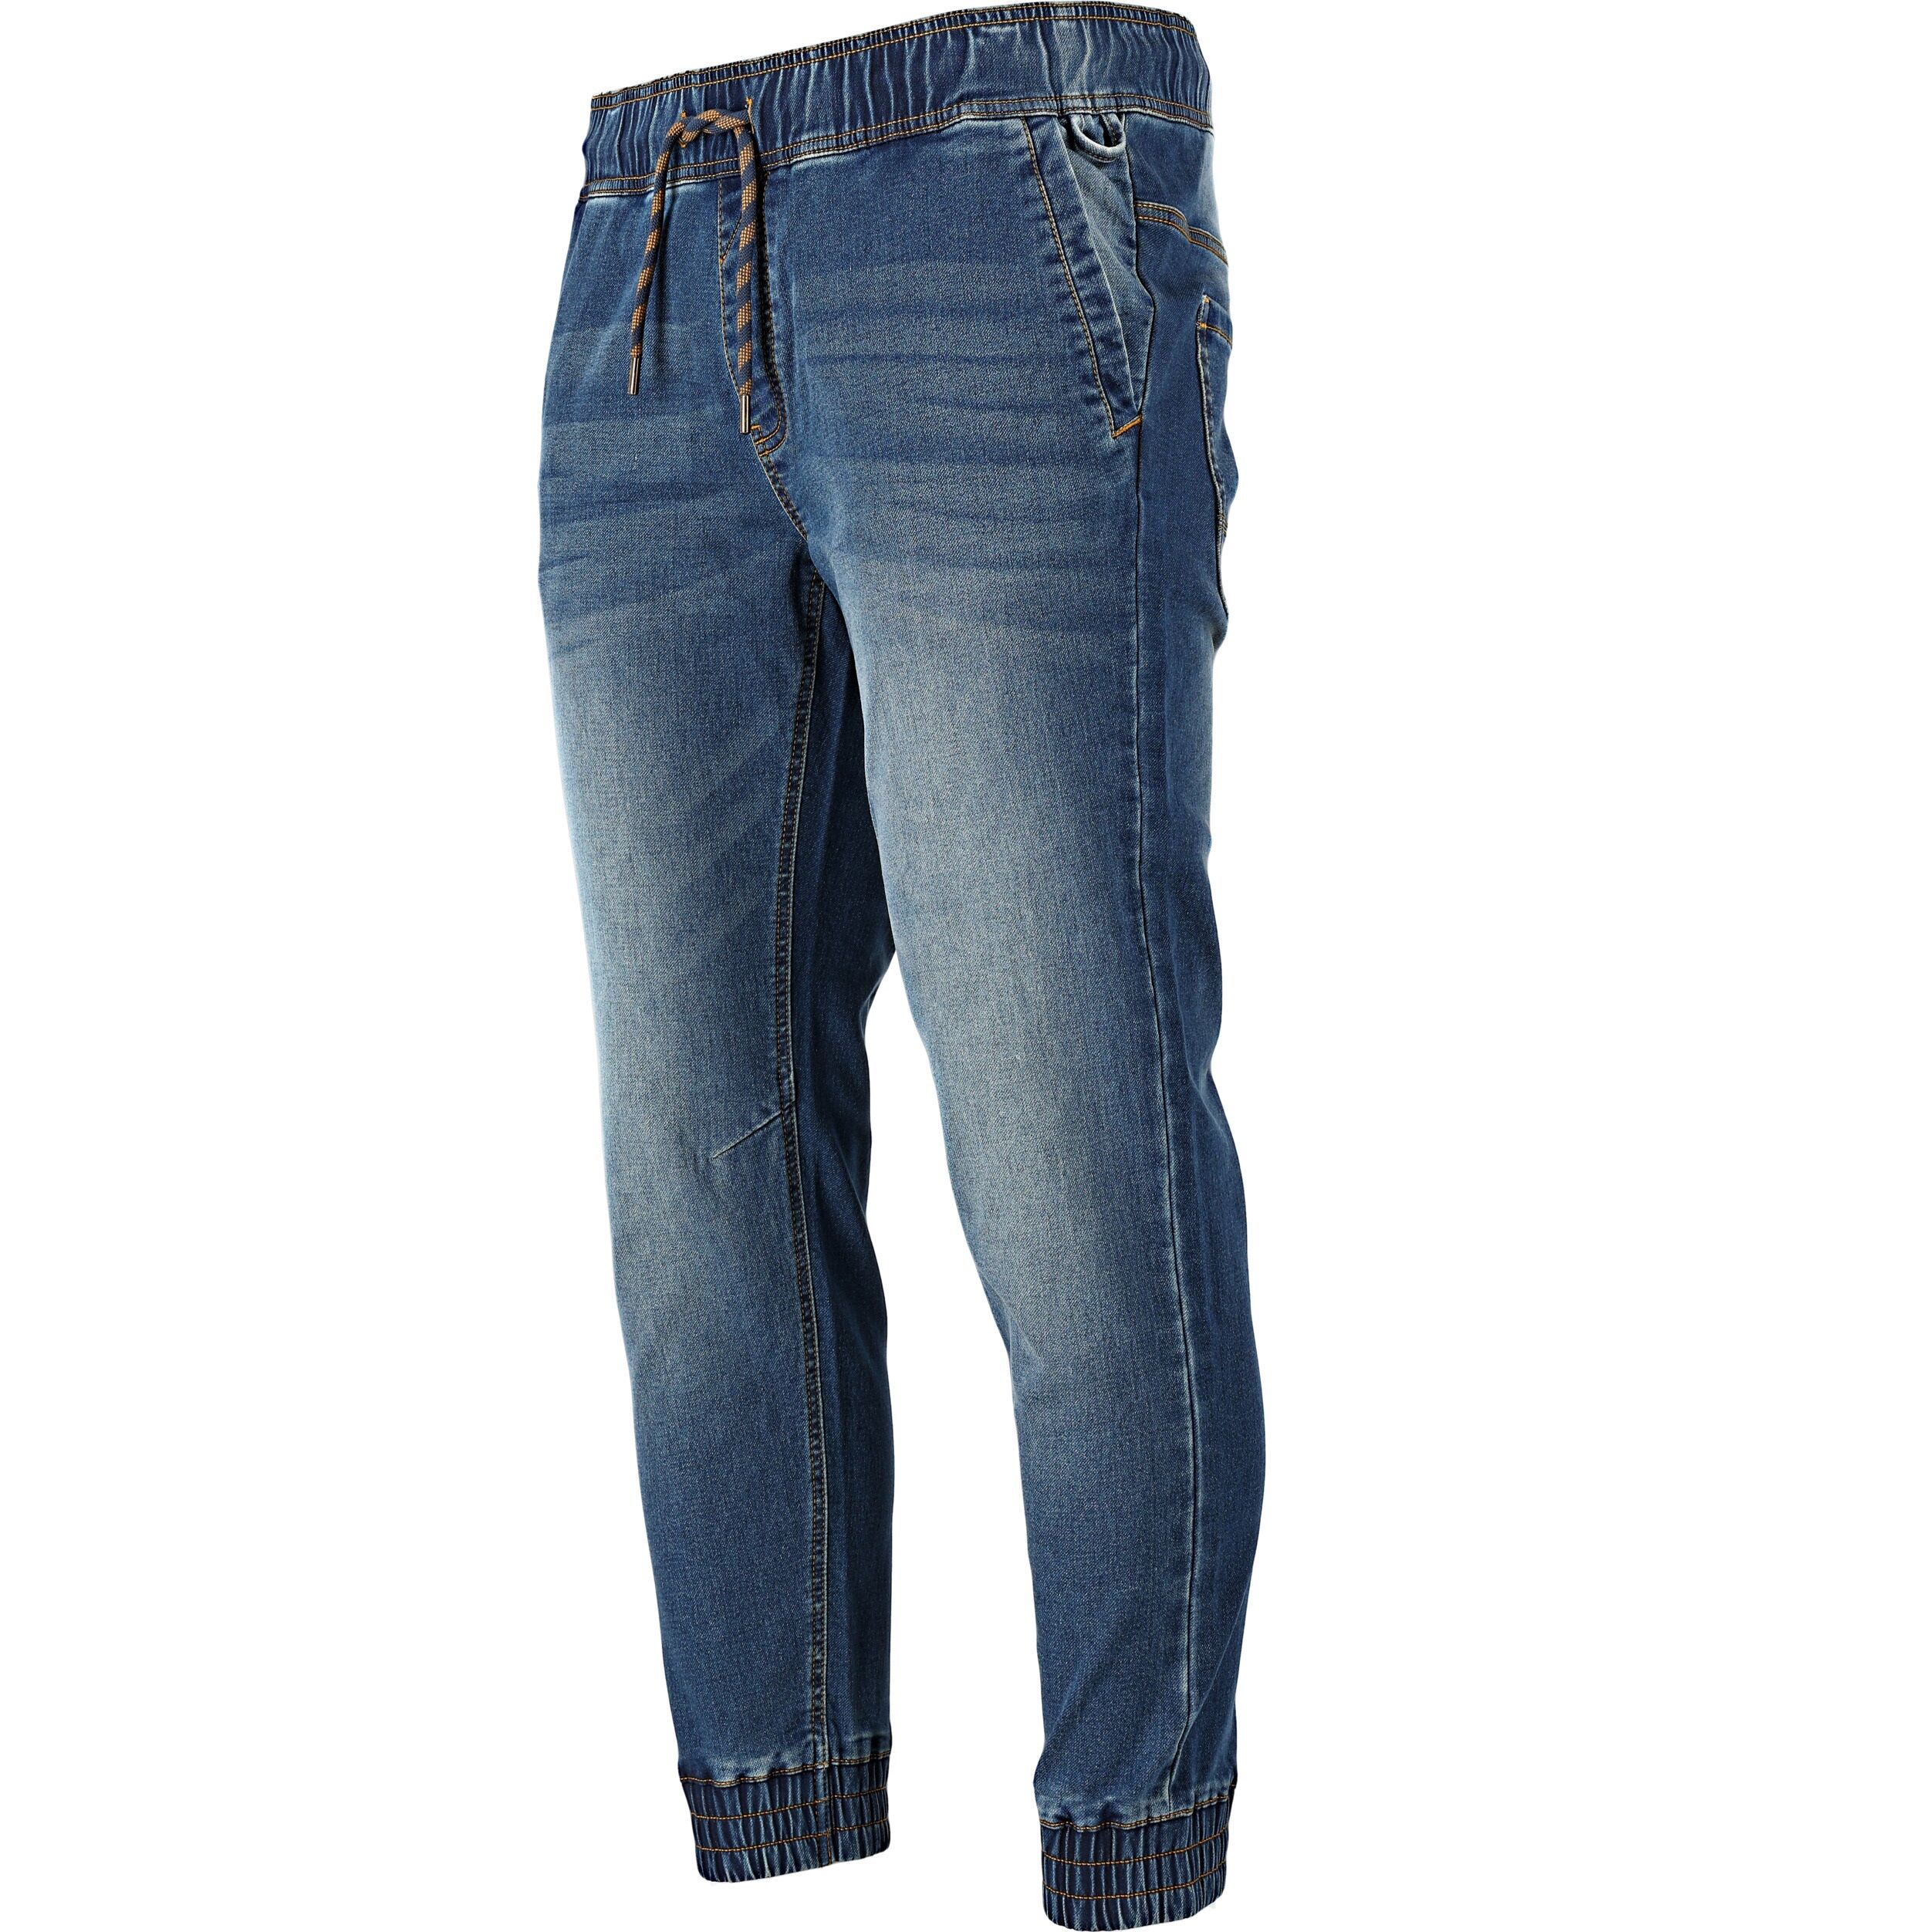 L4053501--Spodnie joggery jeansowe niebieskie stretch, "s", ce, lahti